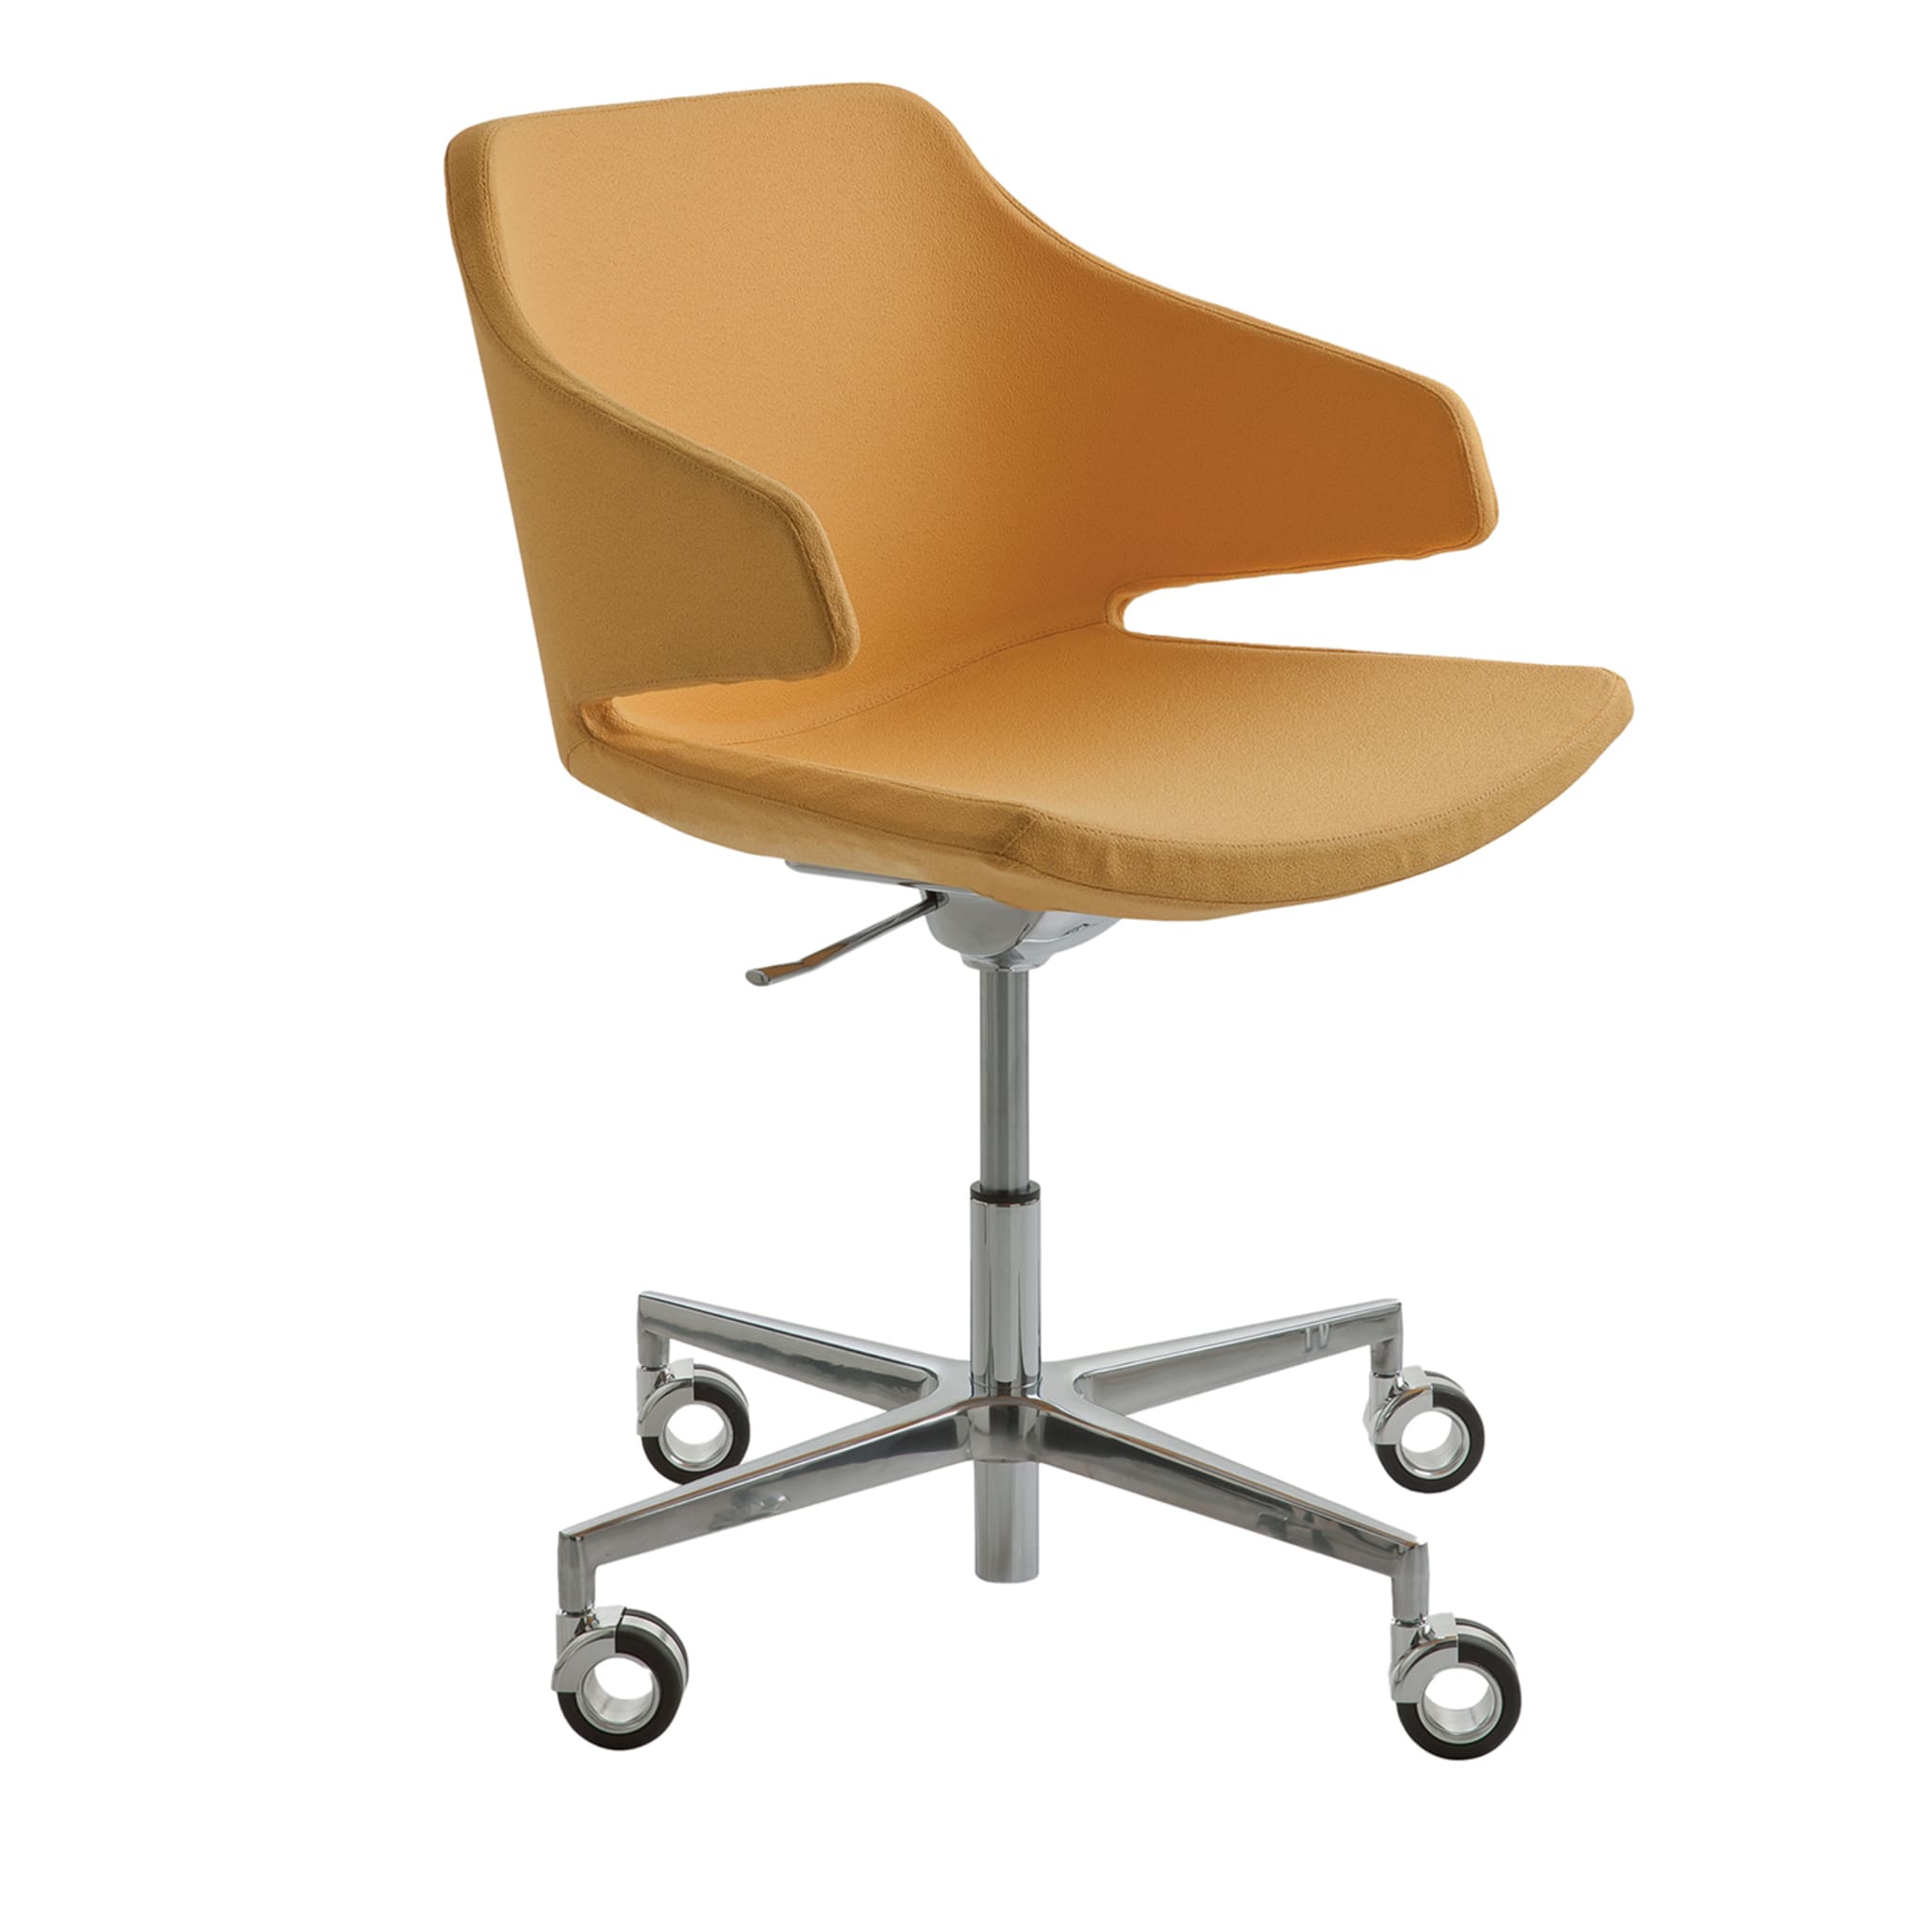 Meraviglia Yellow Swivel Chair - Main view